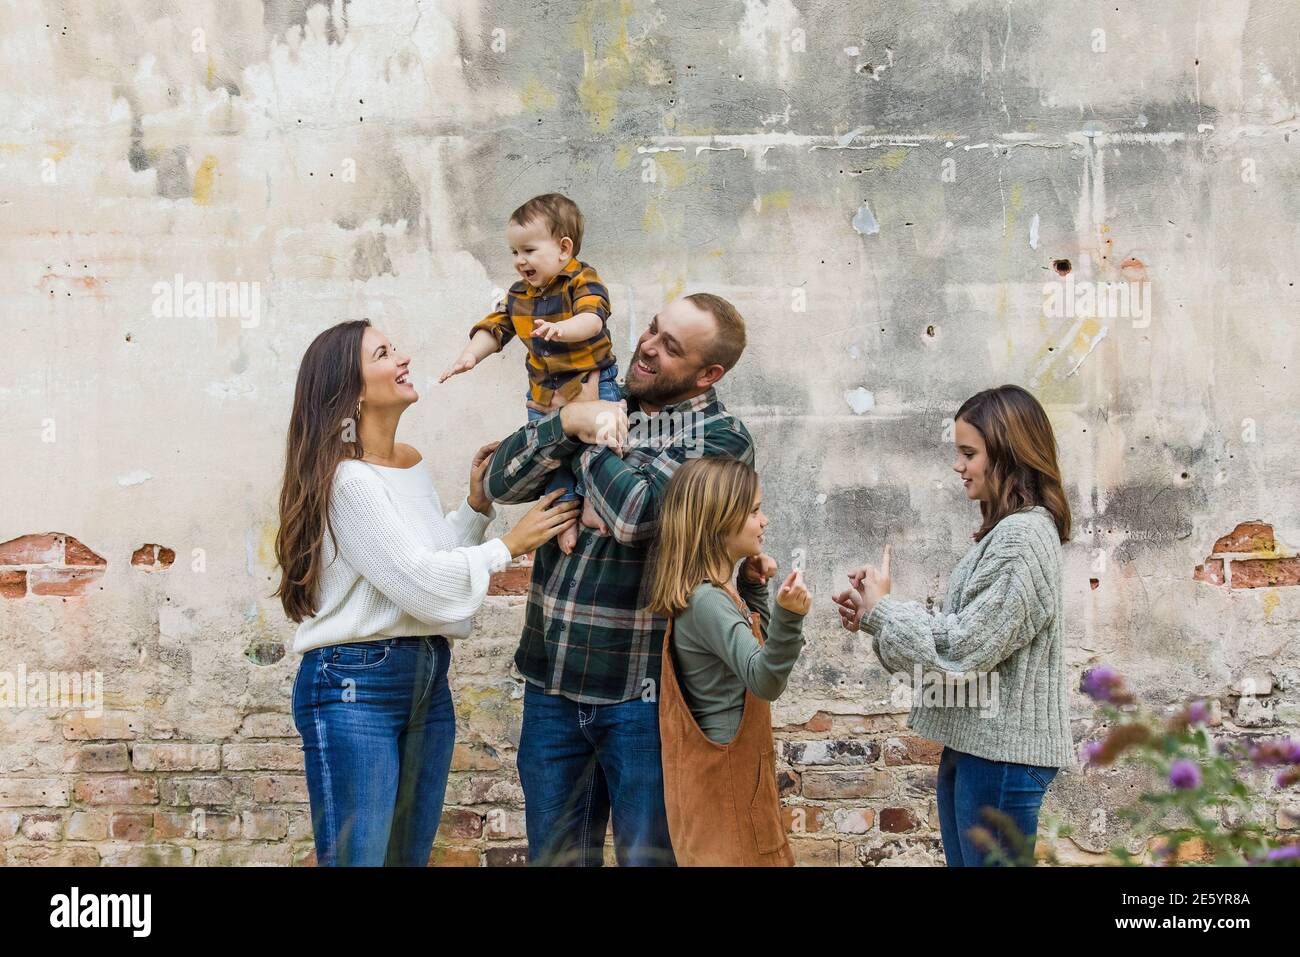 Eine fünfköpfige Familie mit zwei Mädchen und einem Baby Junge, der an einer urbane alte Ziegelmauer steht Stockfoto